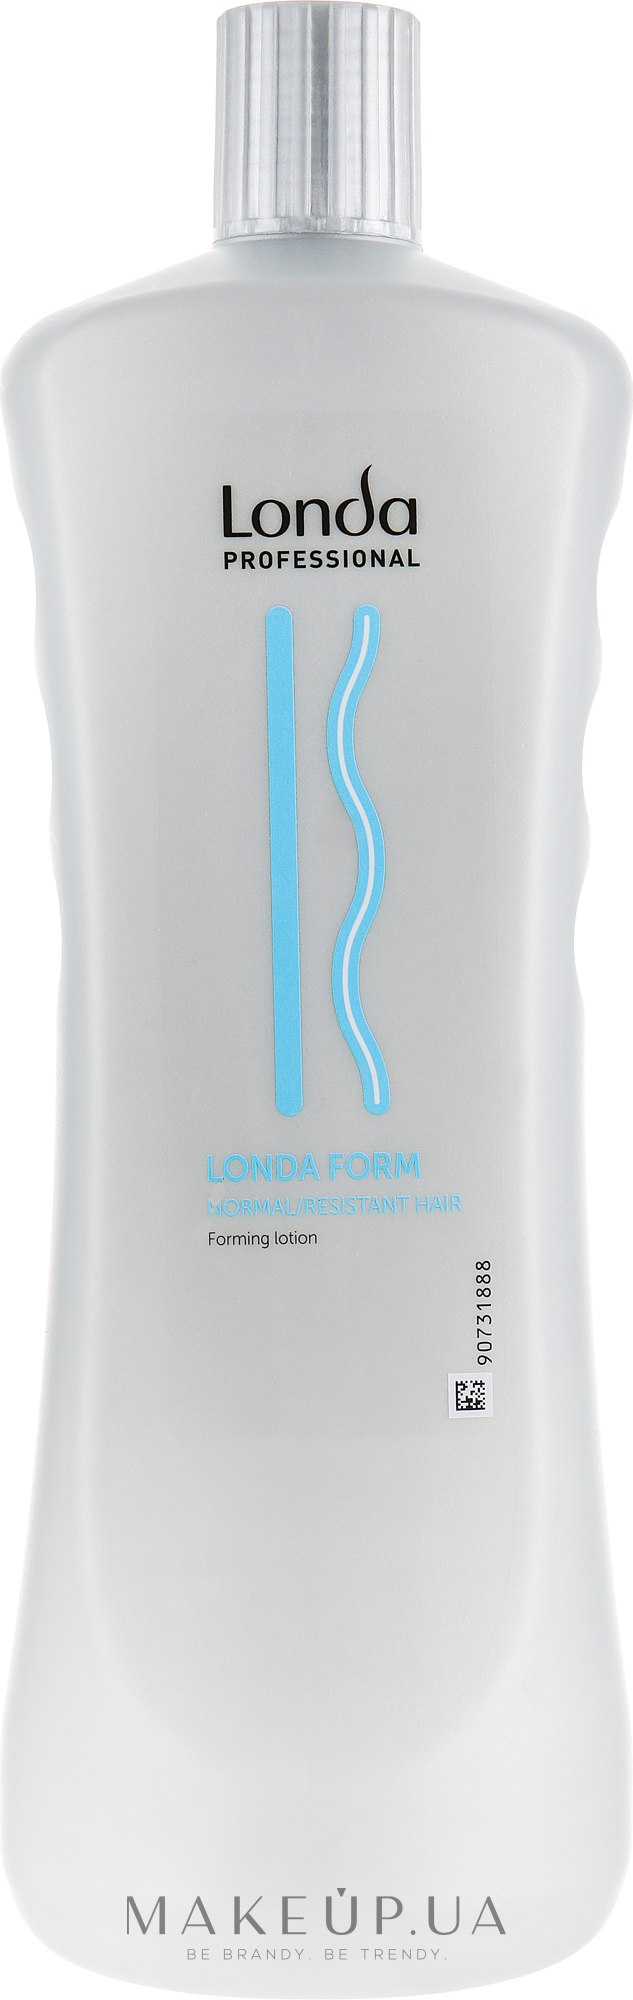 Лосьйон для довготривалої укладки нормального та жорсткого волосся - Londa Professional Londa Form Normal/Resistant Forming Lotion — фото 1000ml